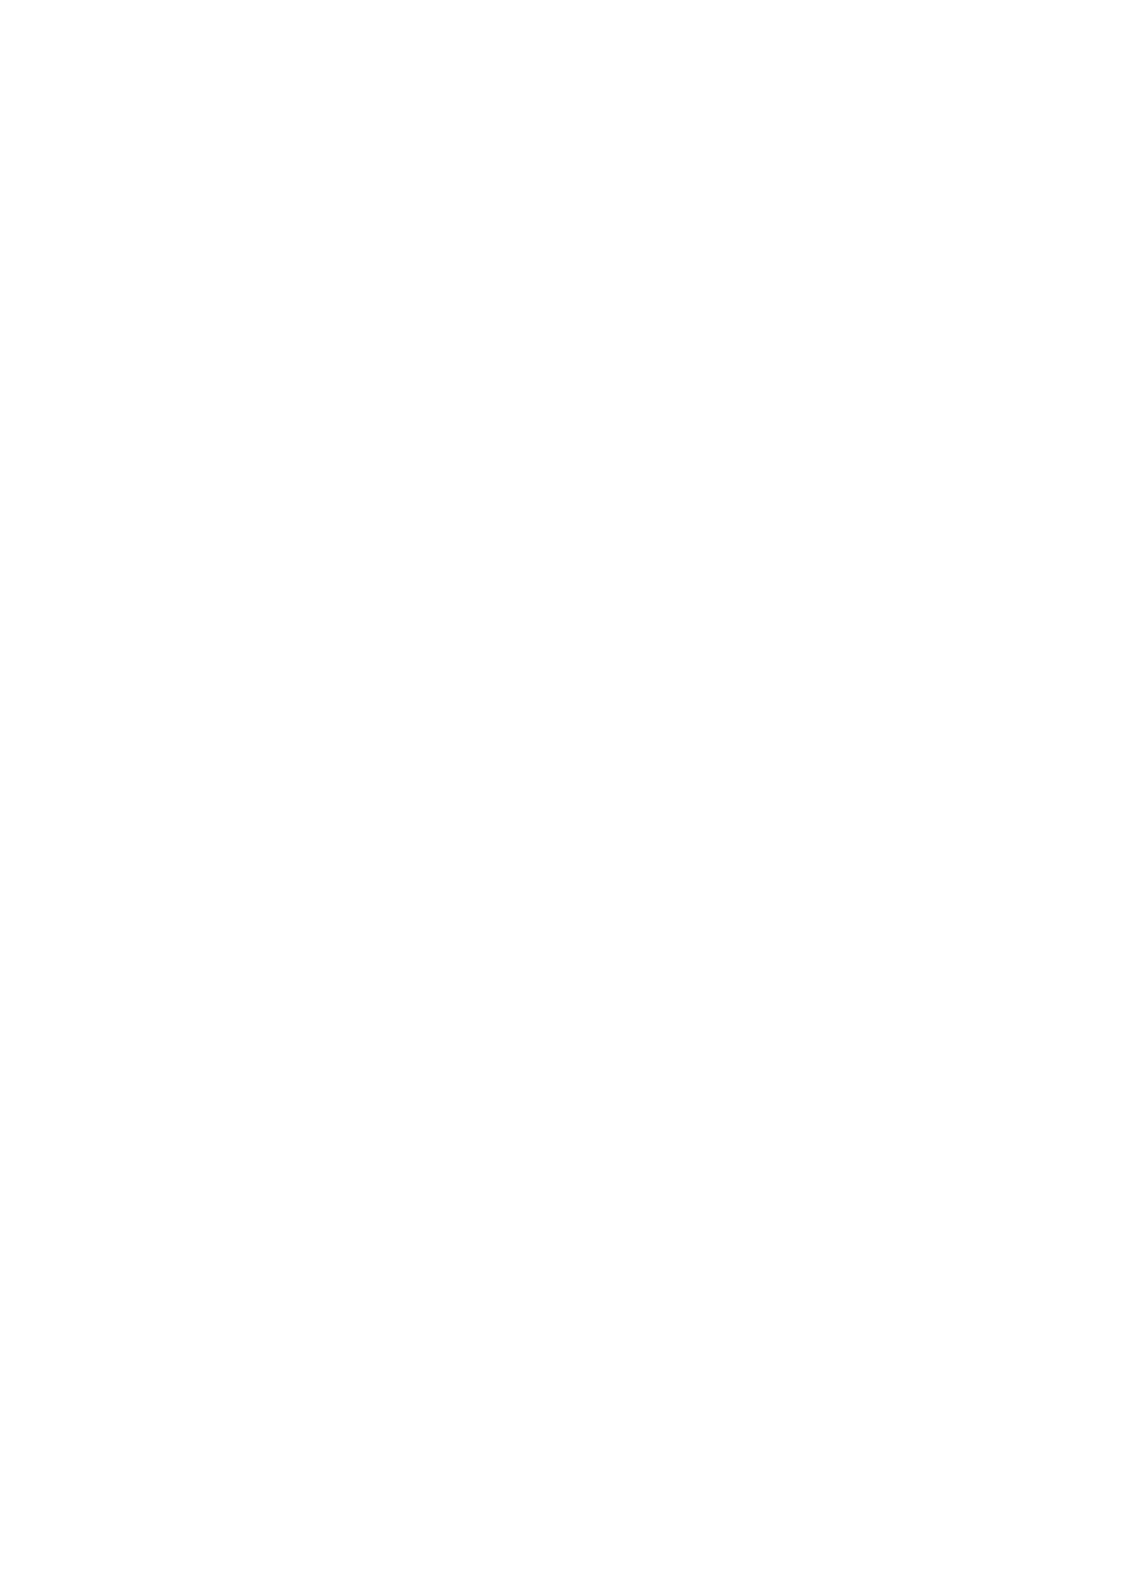 Dayforce logo for dark backgrounds (transparent PNG)